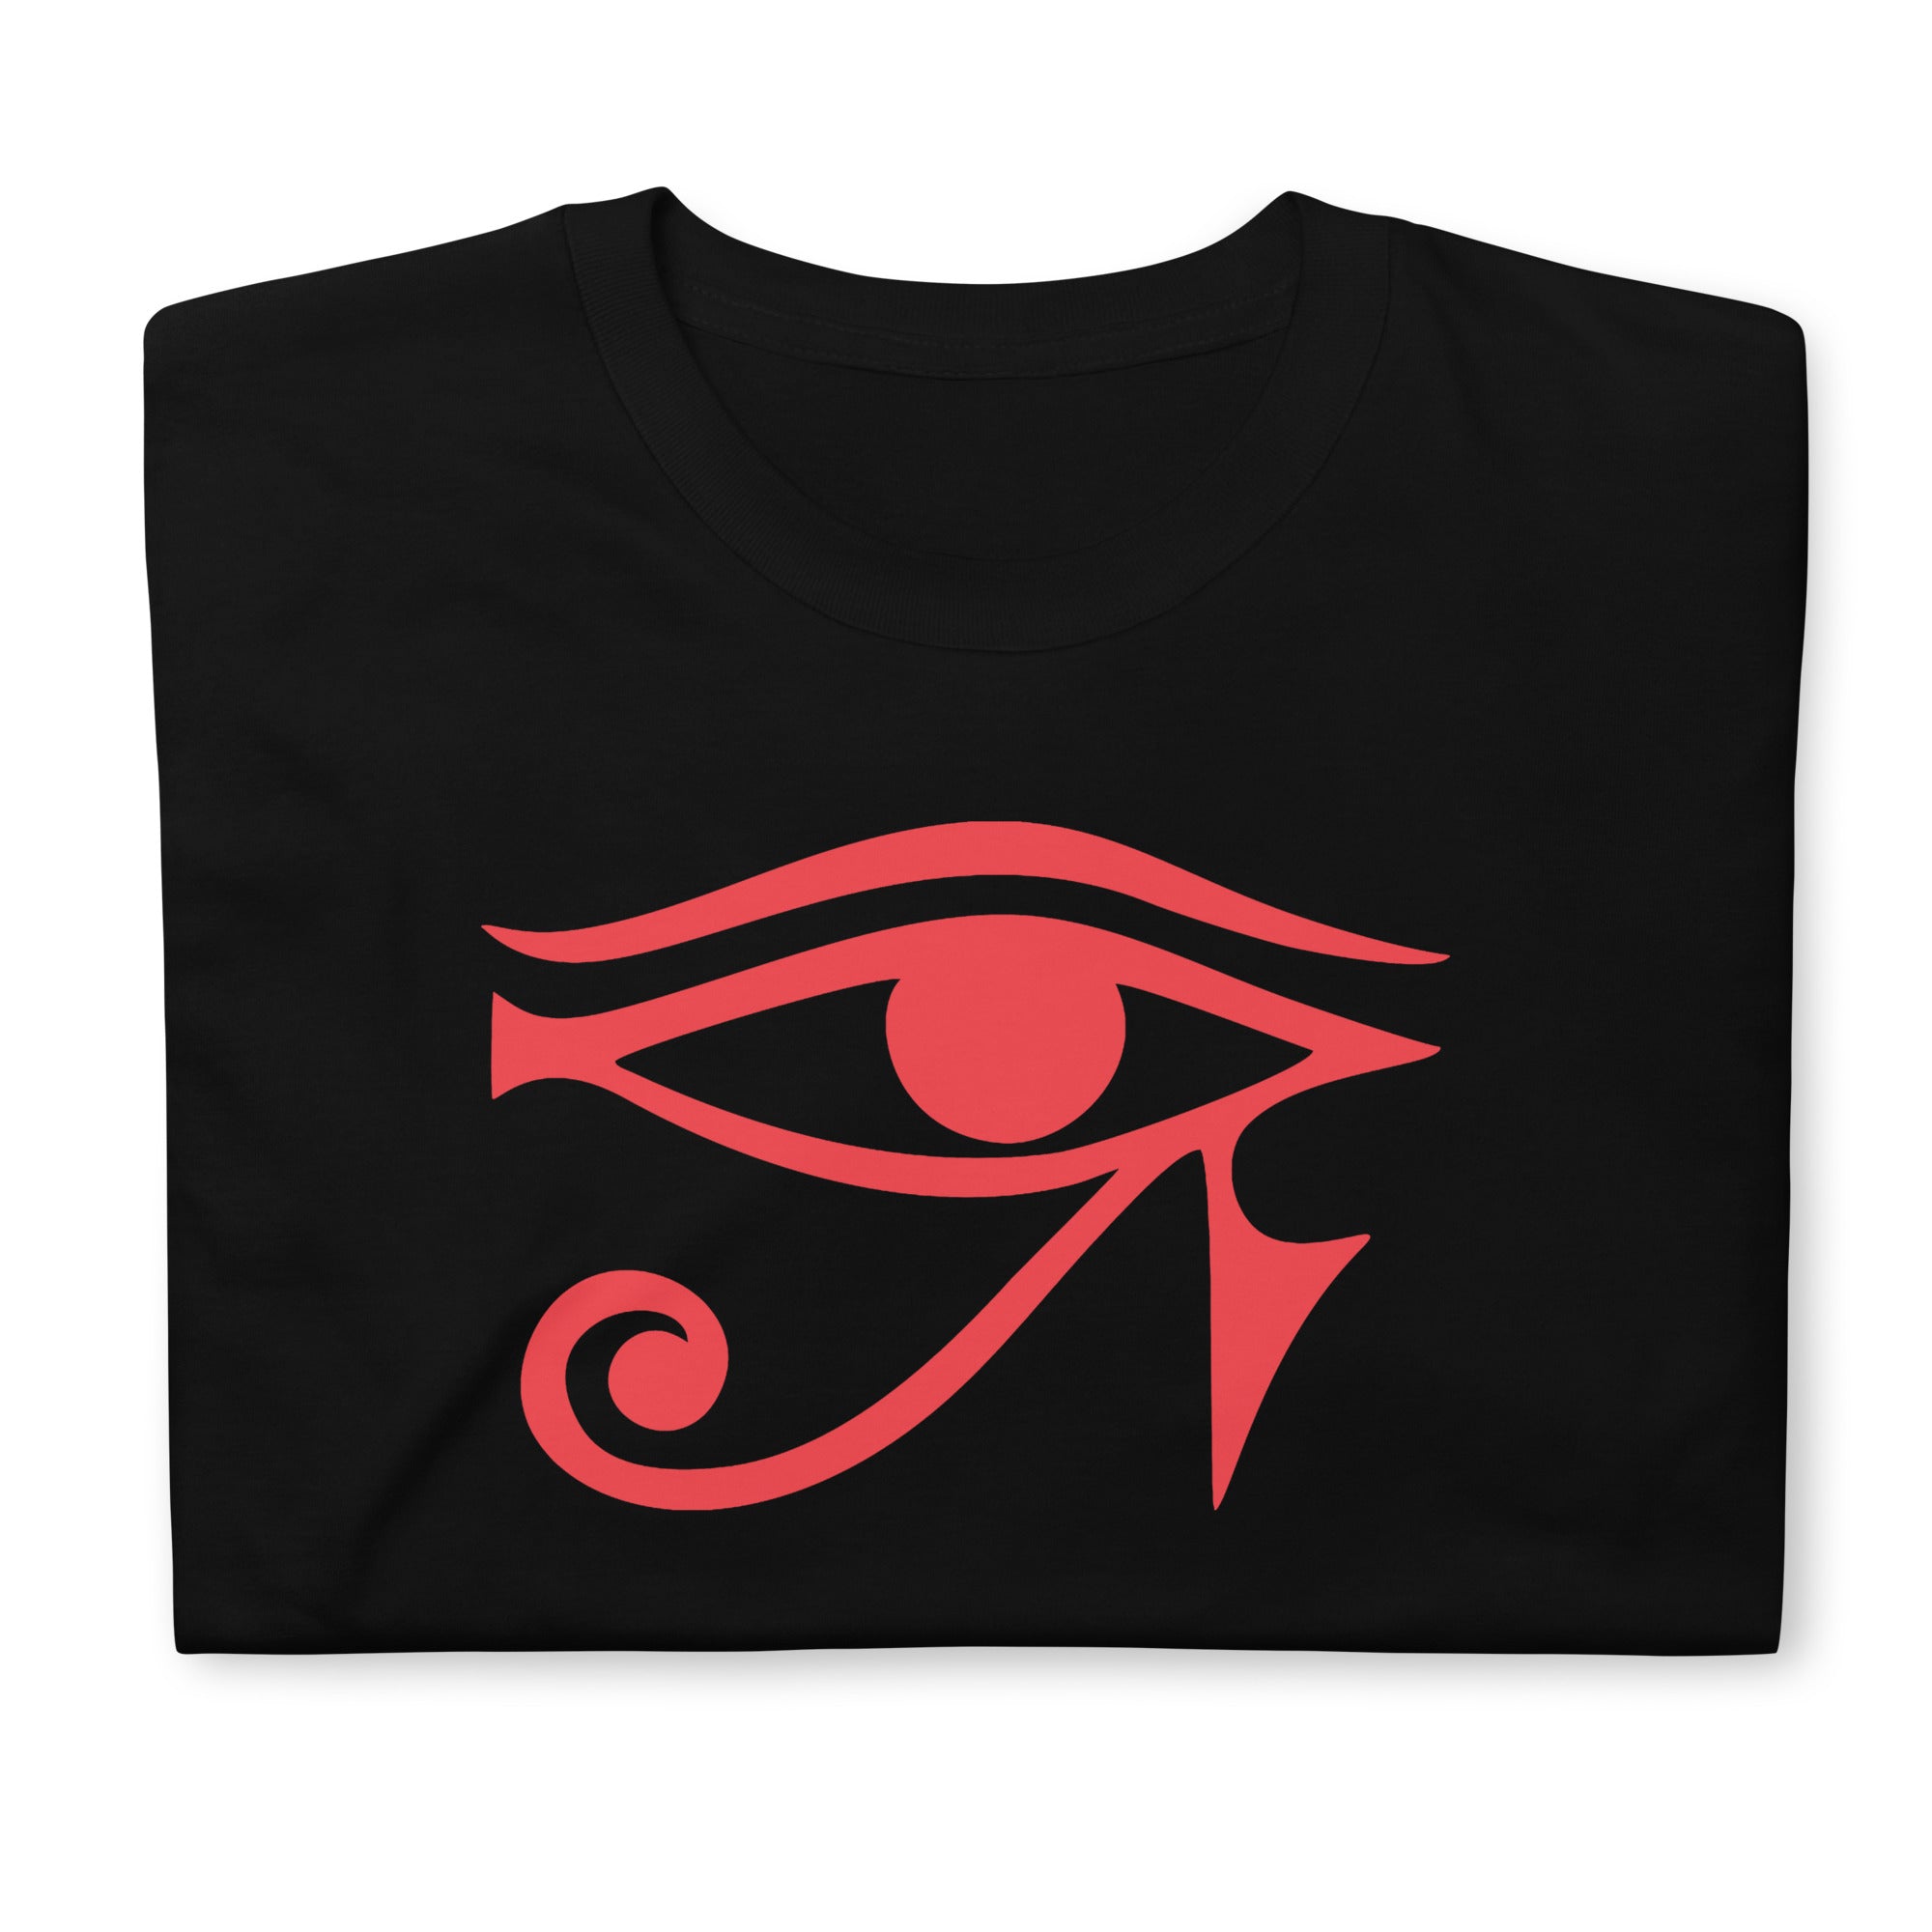 Eye of Ra Egyptian Goddess Men's Short-Sleeve T-Shirt Red Print - Edge of Life Designs